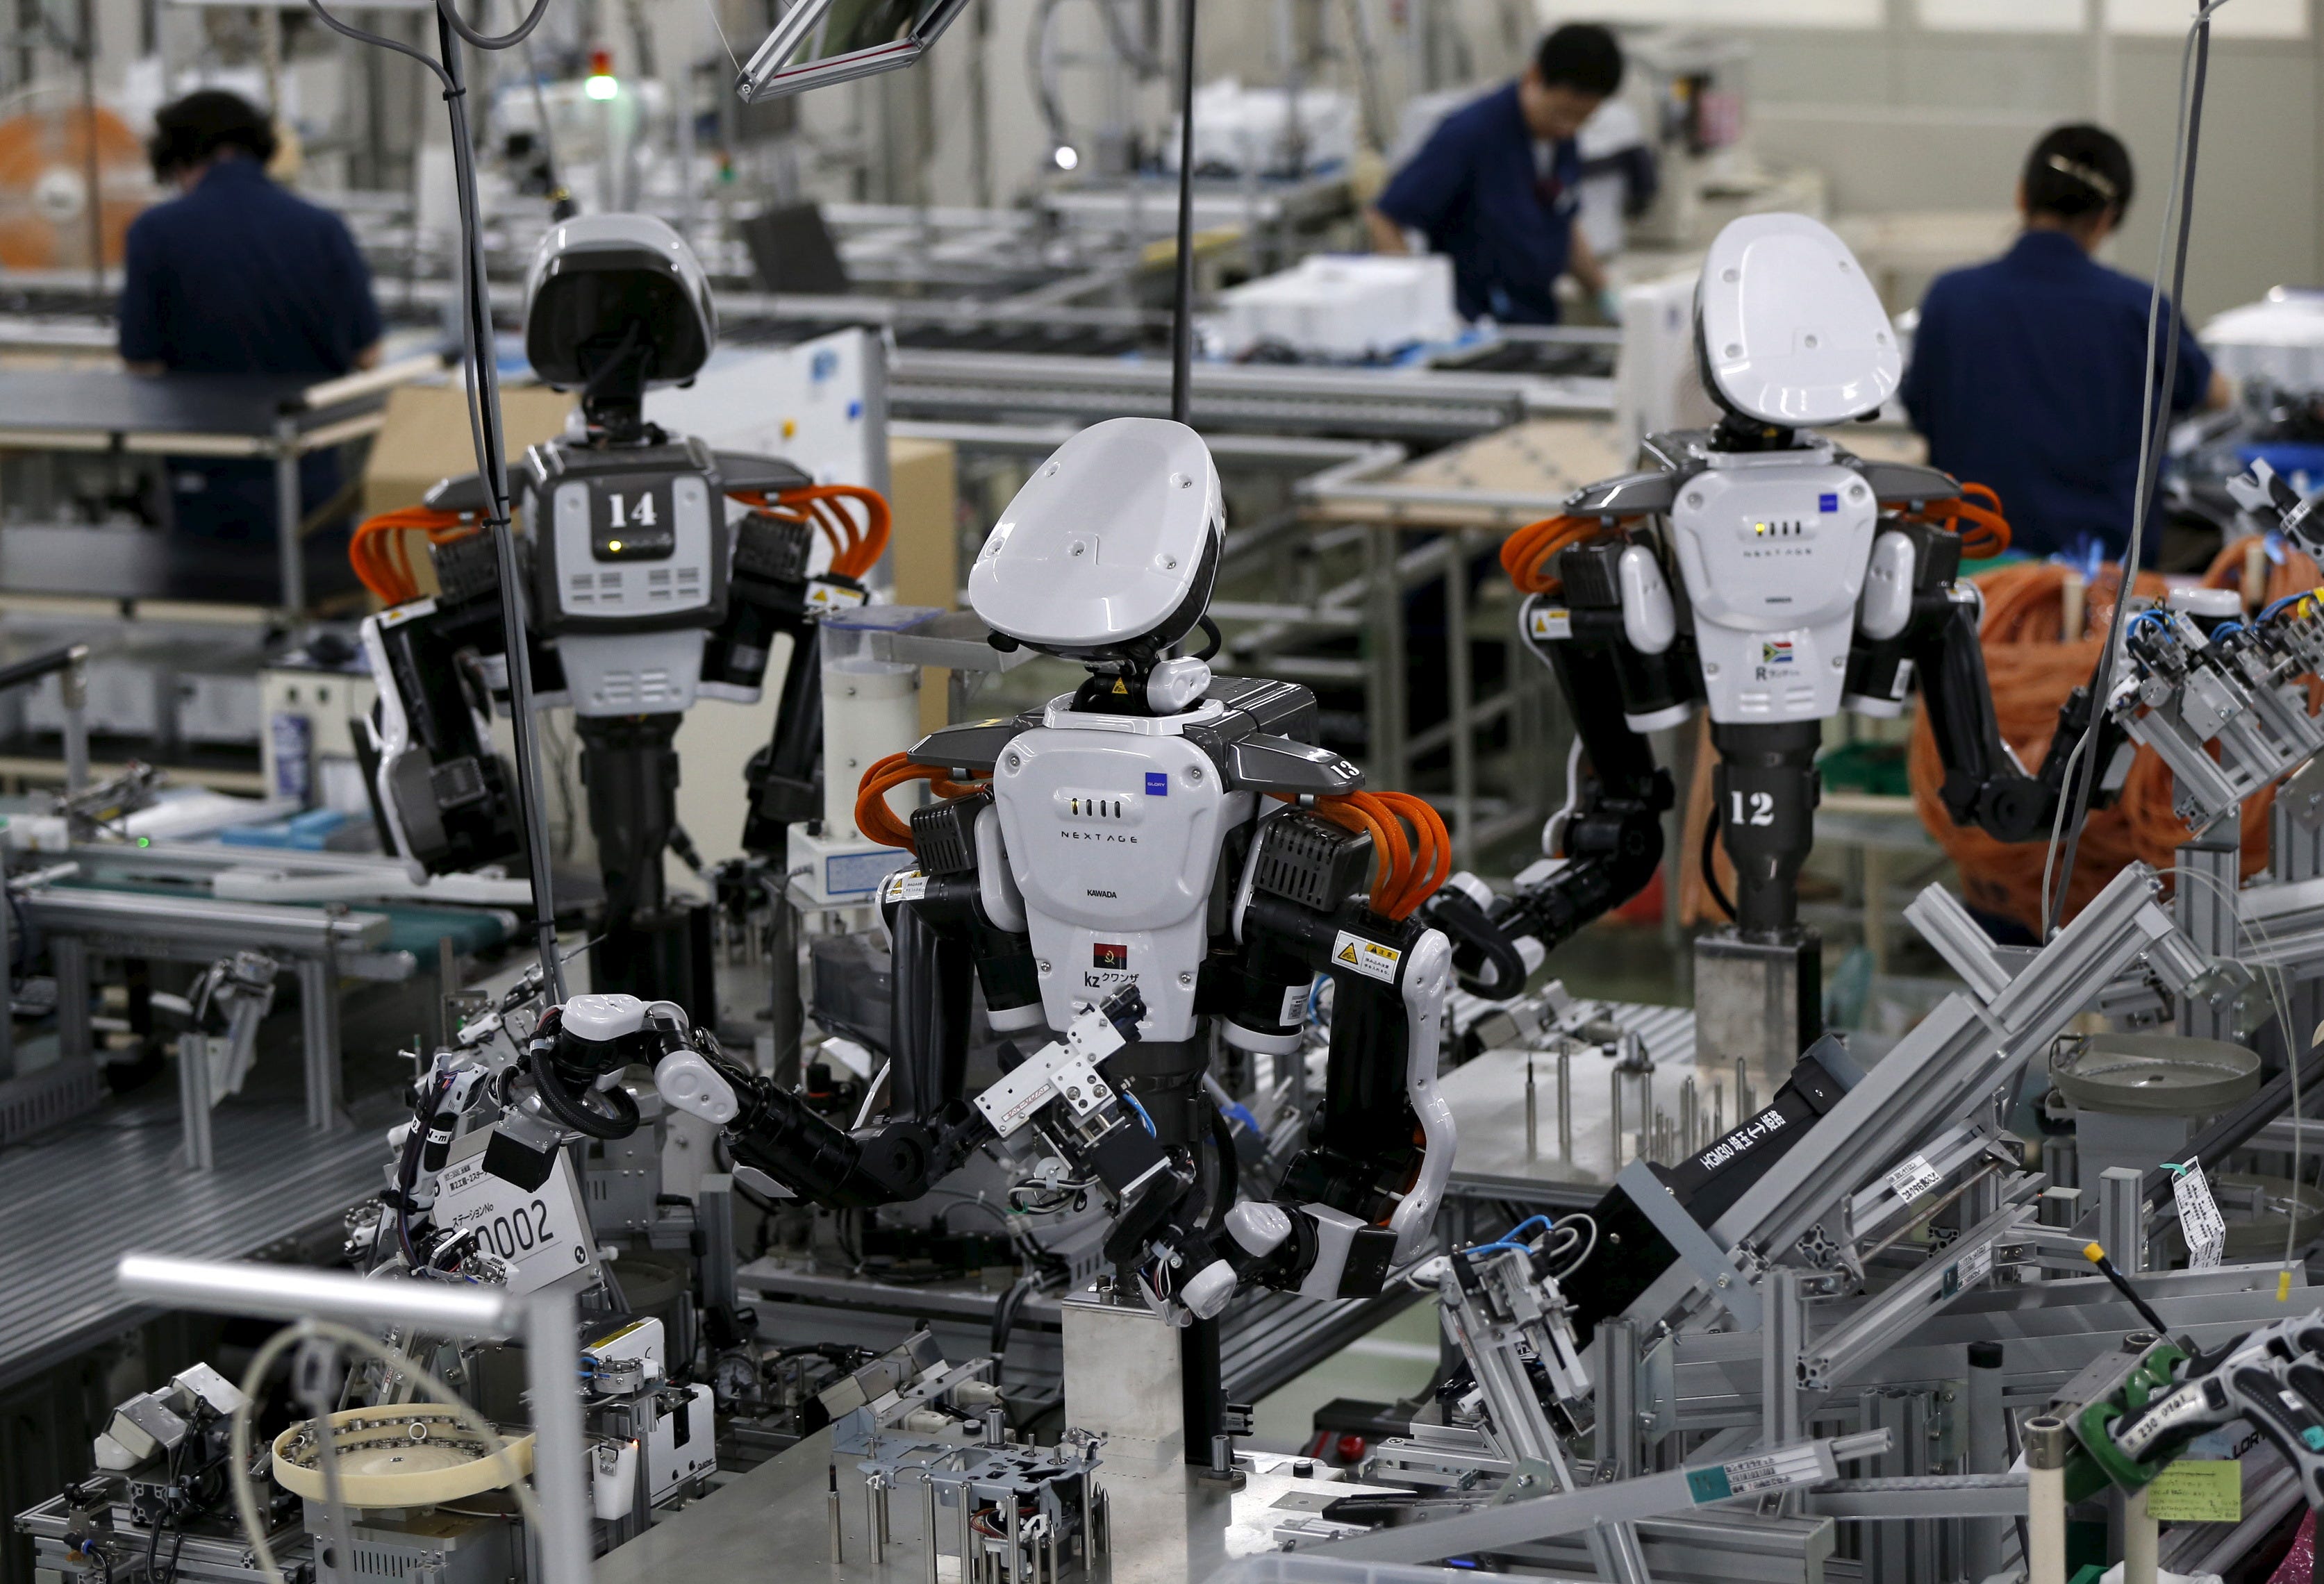 Работы и технологии робот. Робототехника в промышленности. Промышленные роботы. Фабрика роботов. Роботизация промышленности.